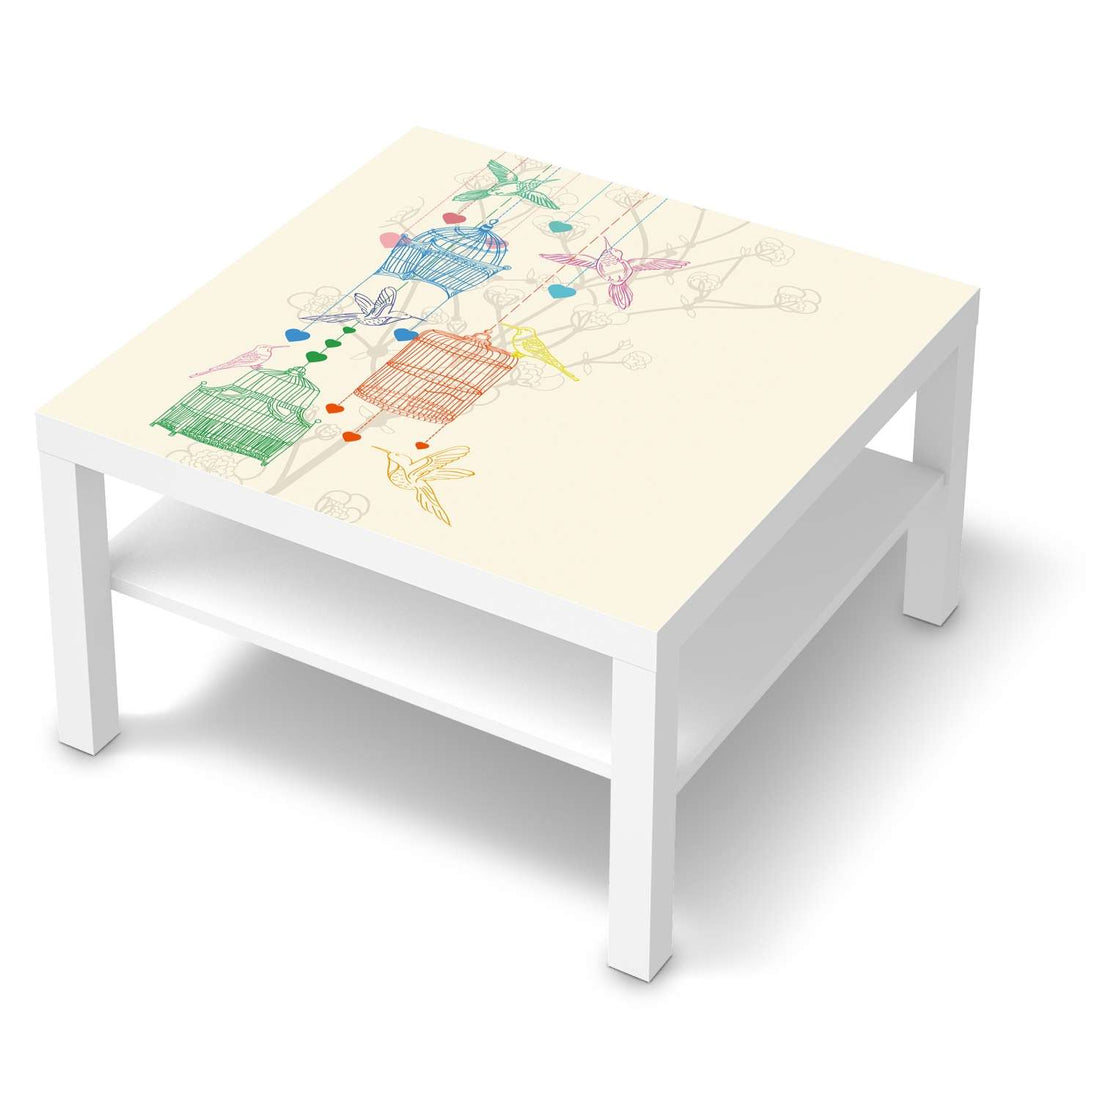 Selbstklebende Folie Birdcage - IKEA Lack Tisch 78x78 cm - weiss